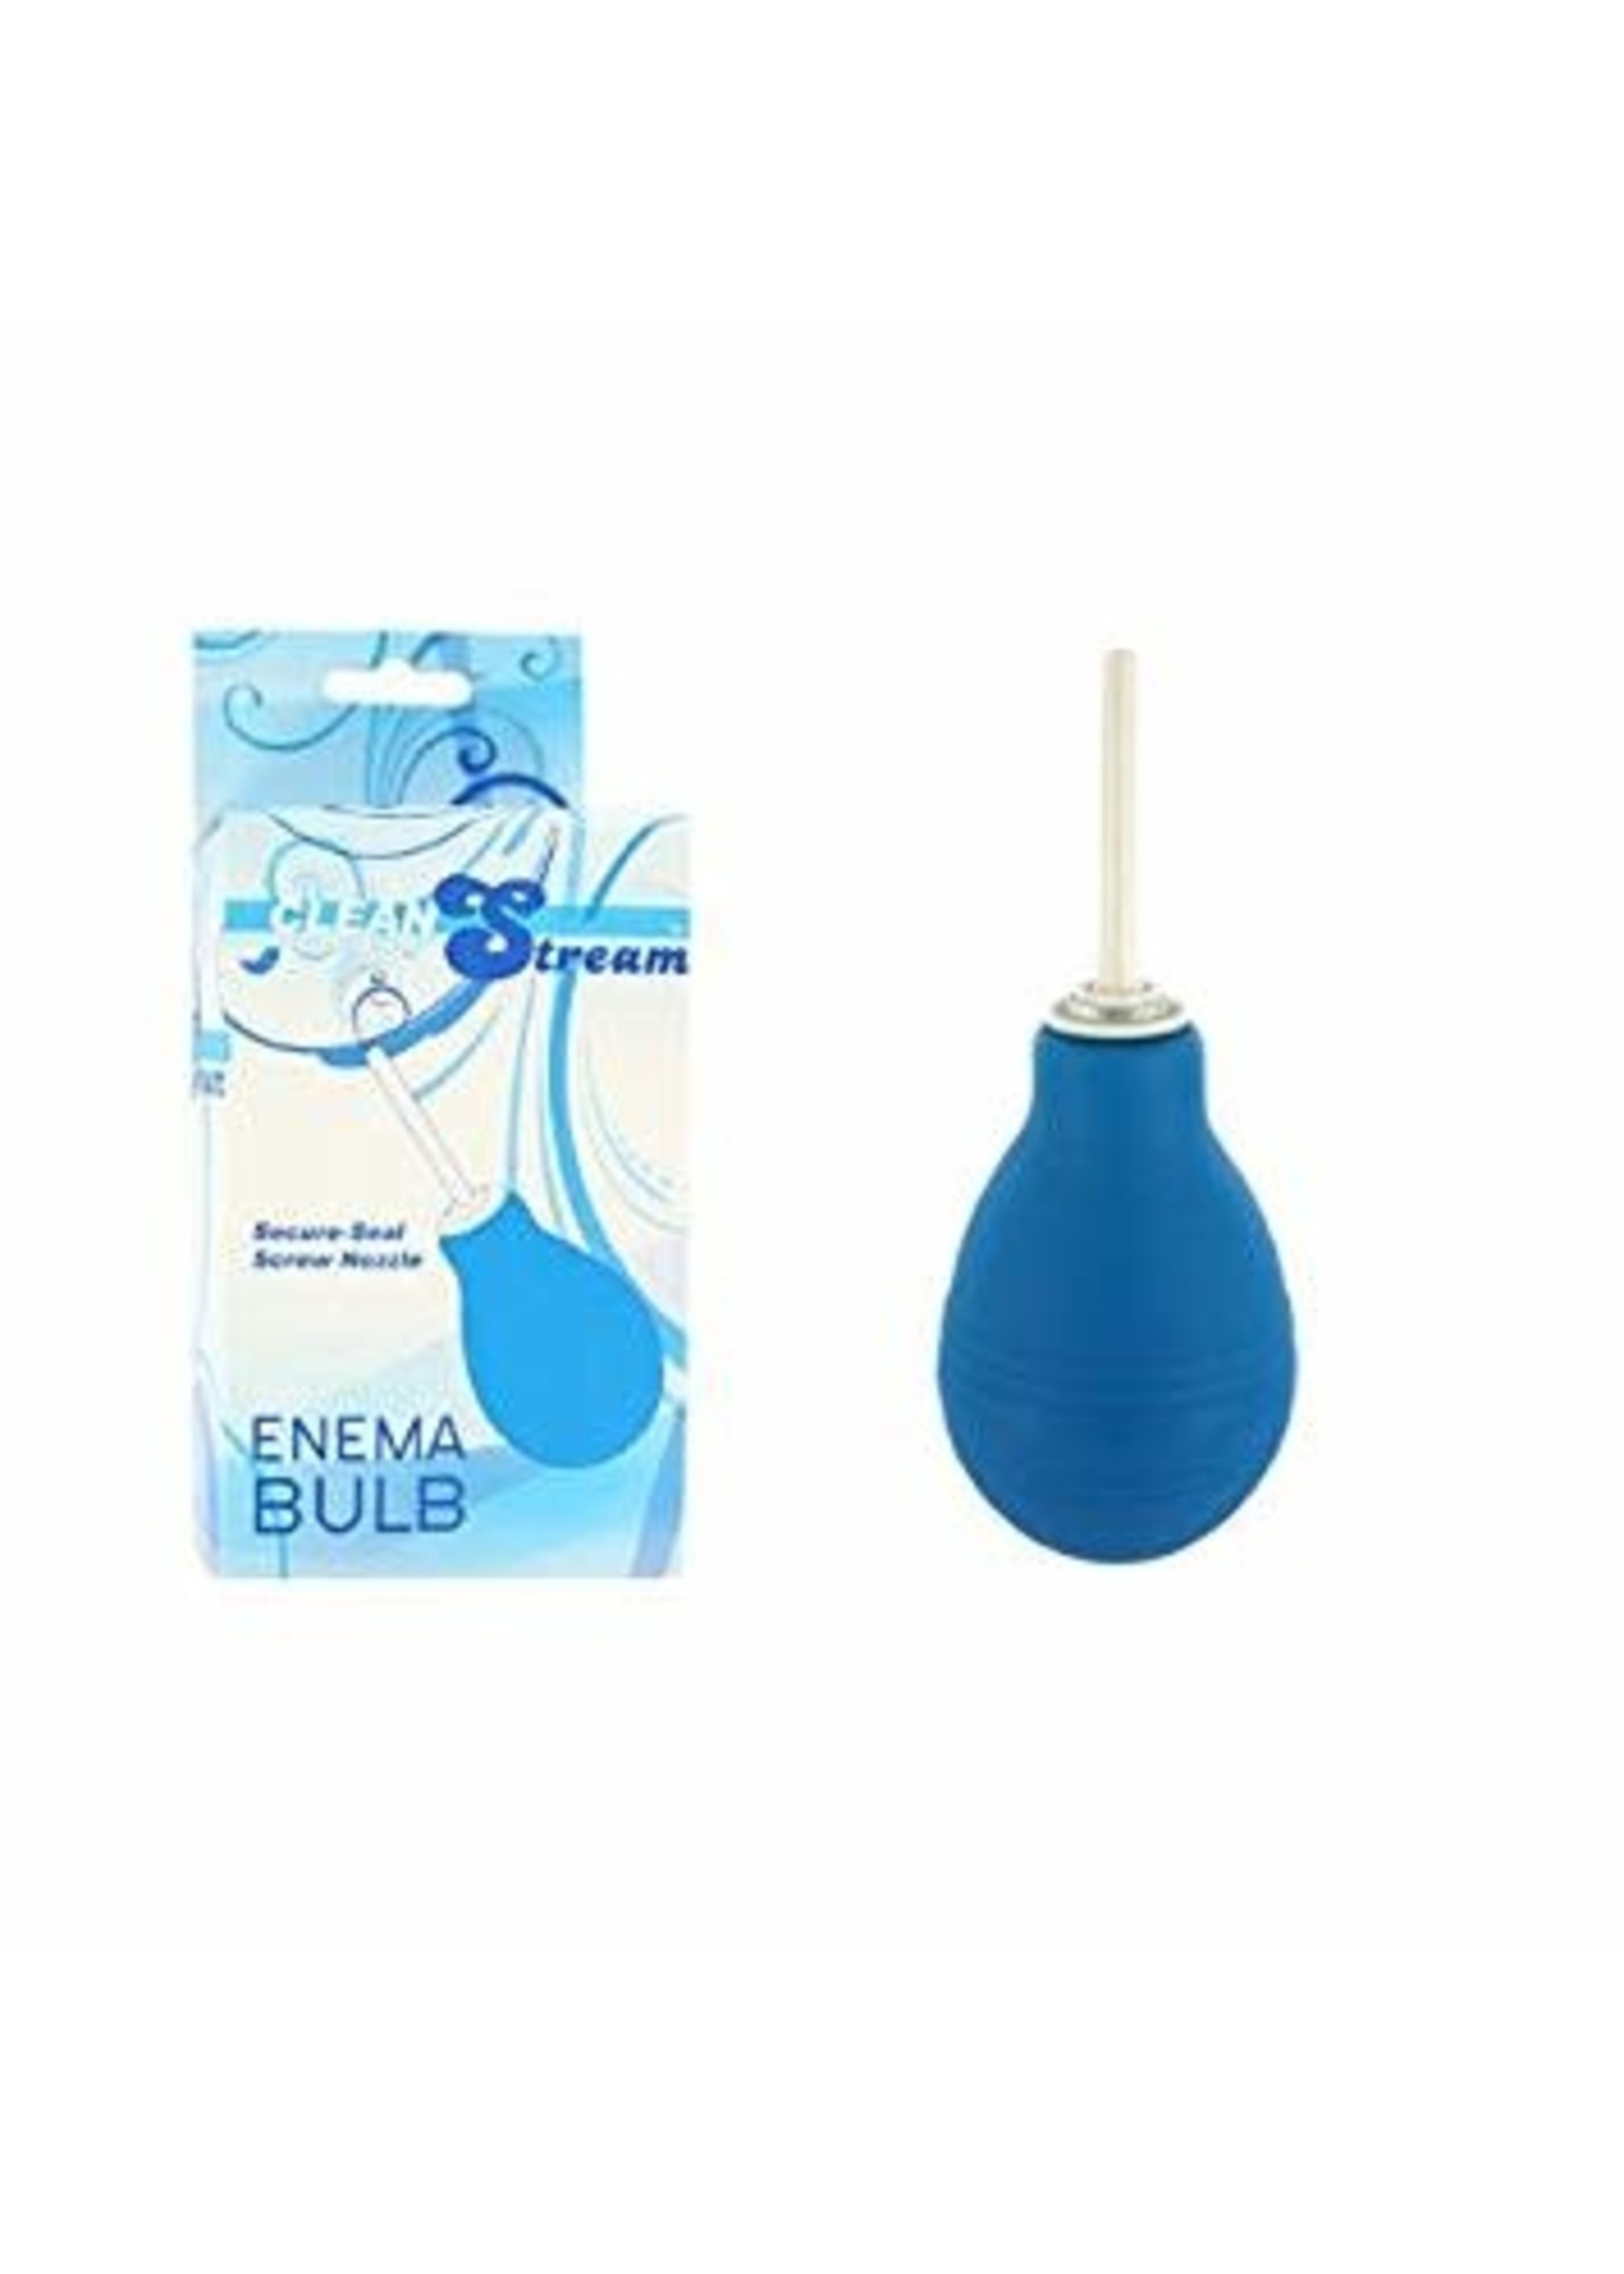 Clean Stream Anal Douche Enema Bulb - Blue